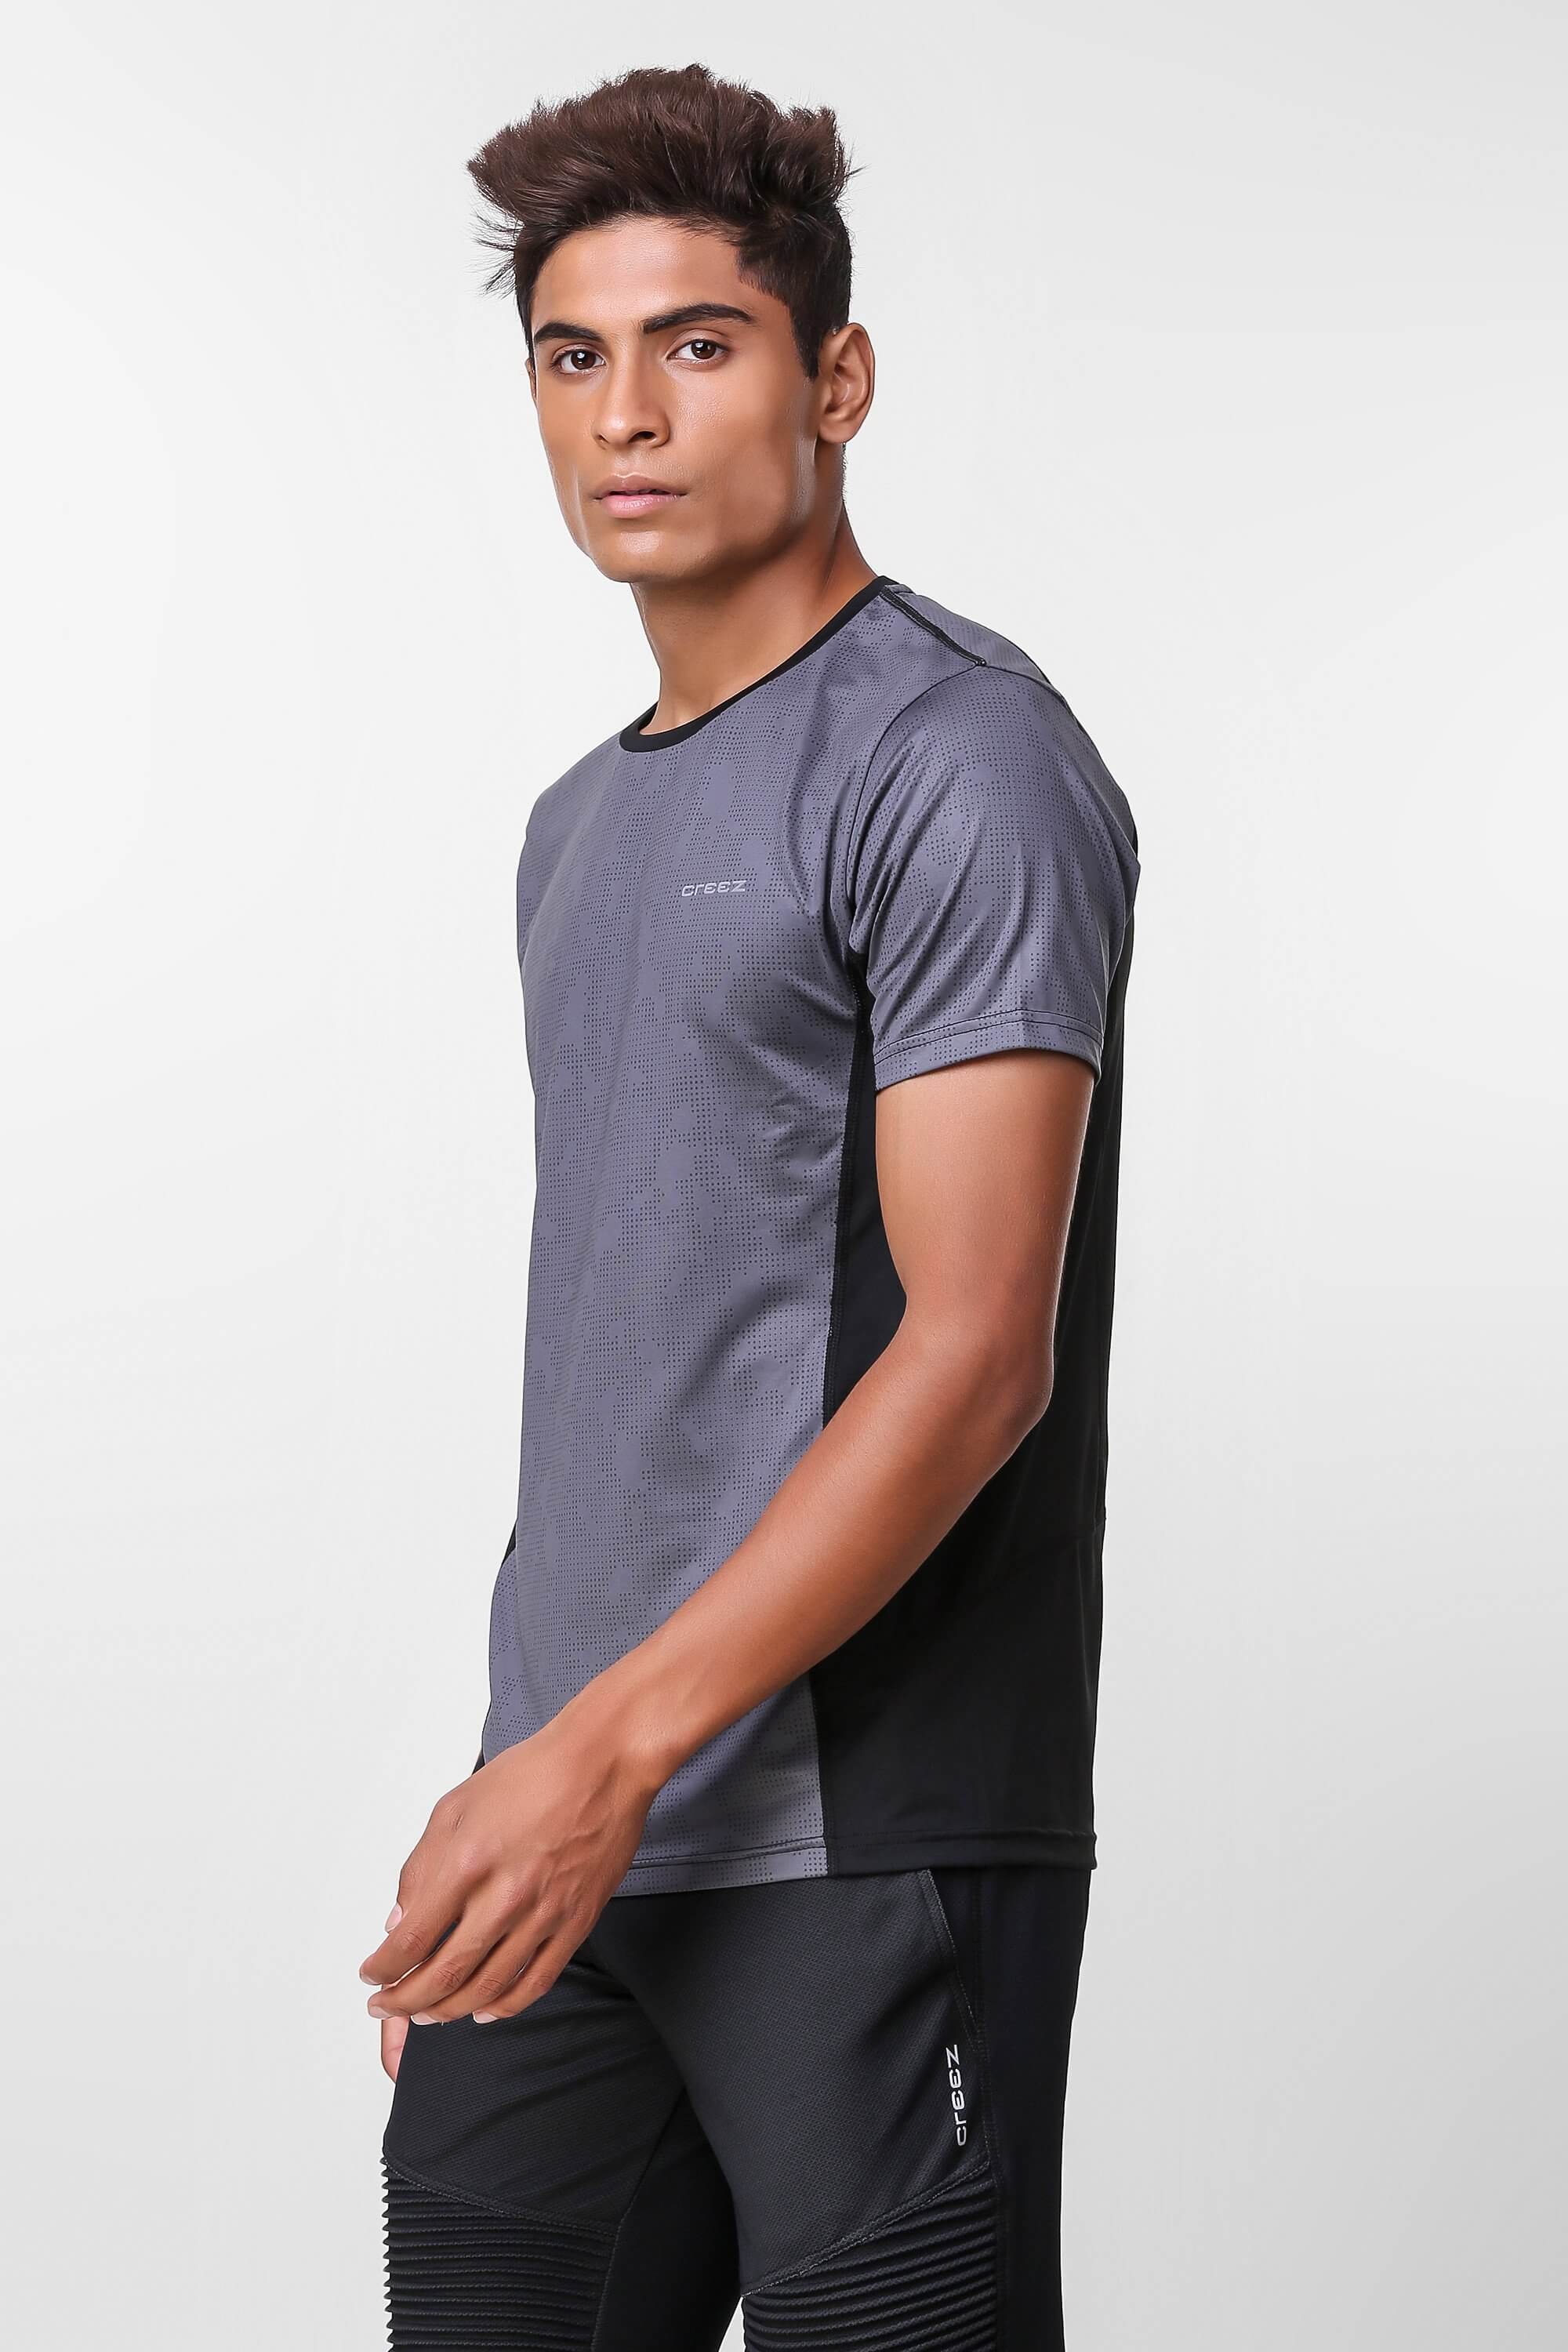 Camo Print Stretchable Tshirt 1